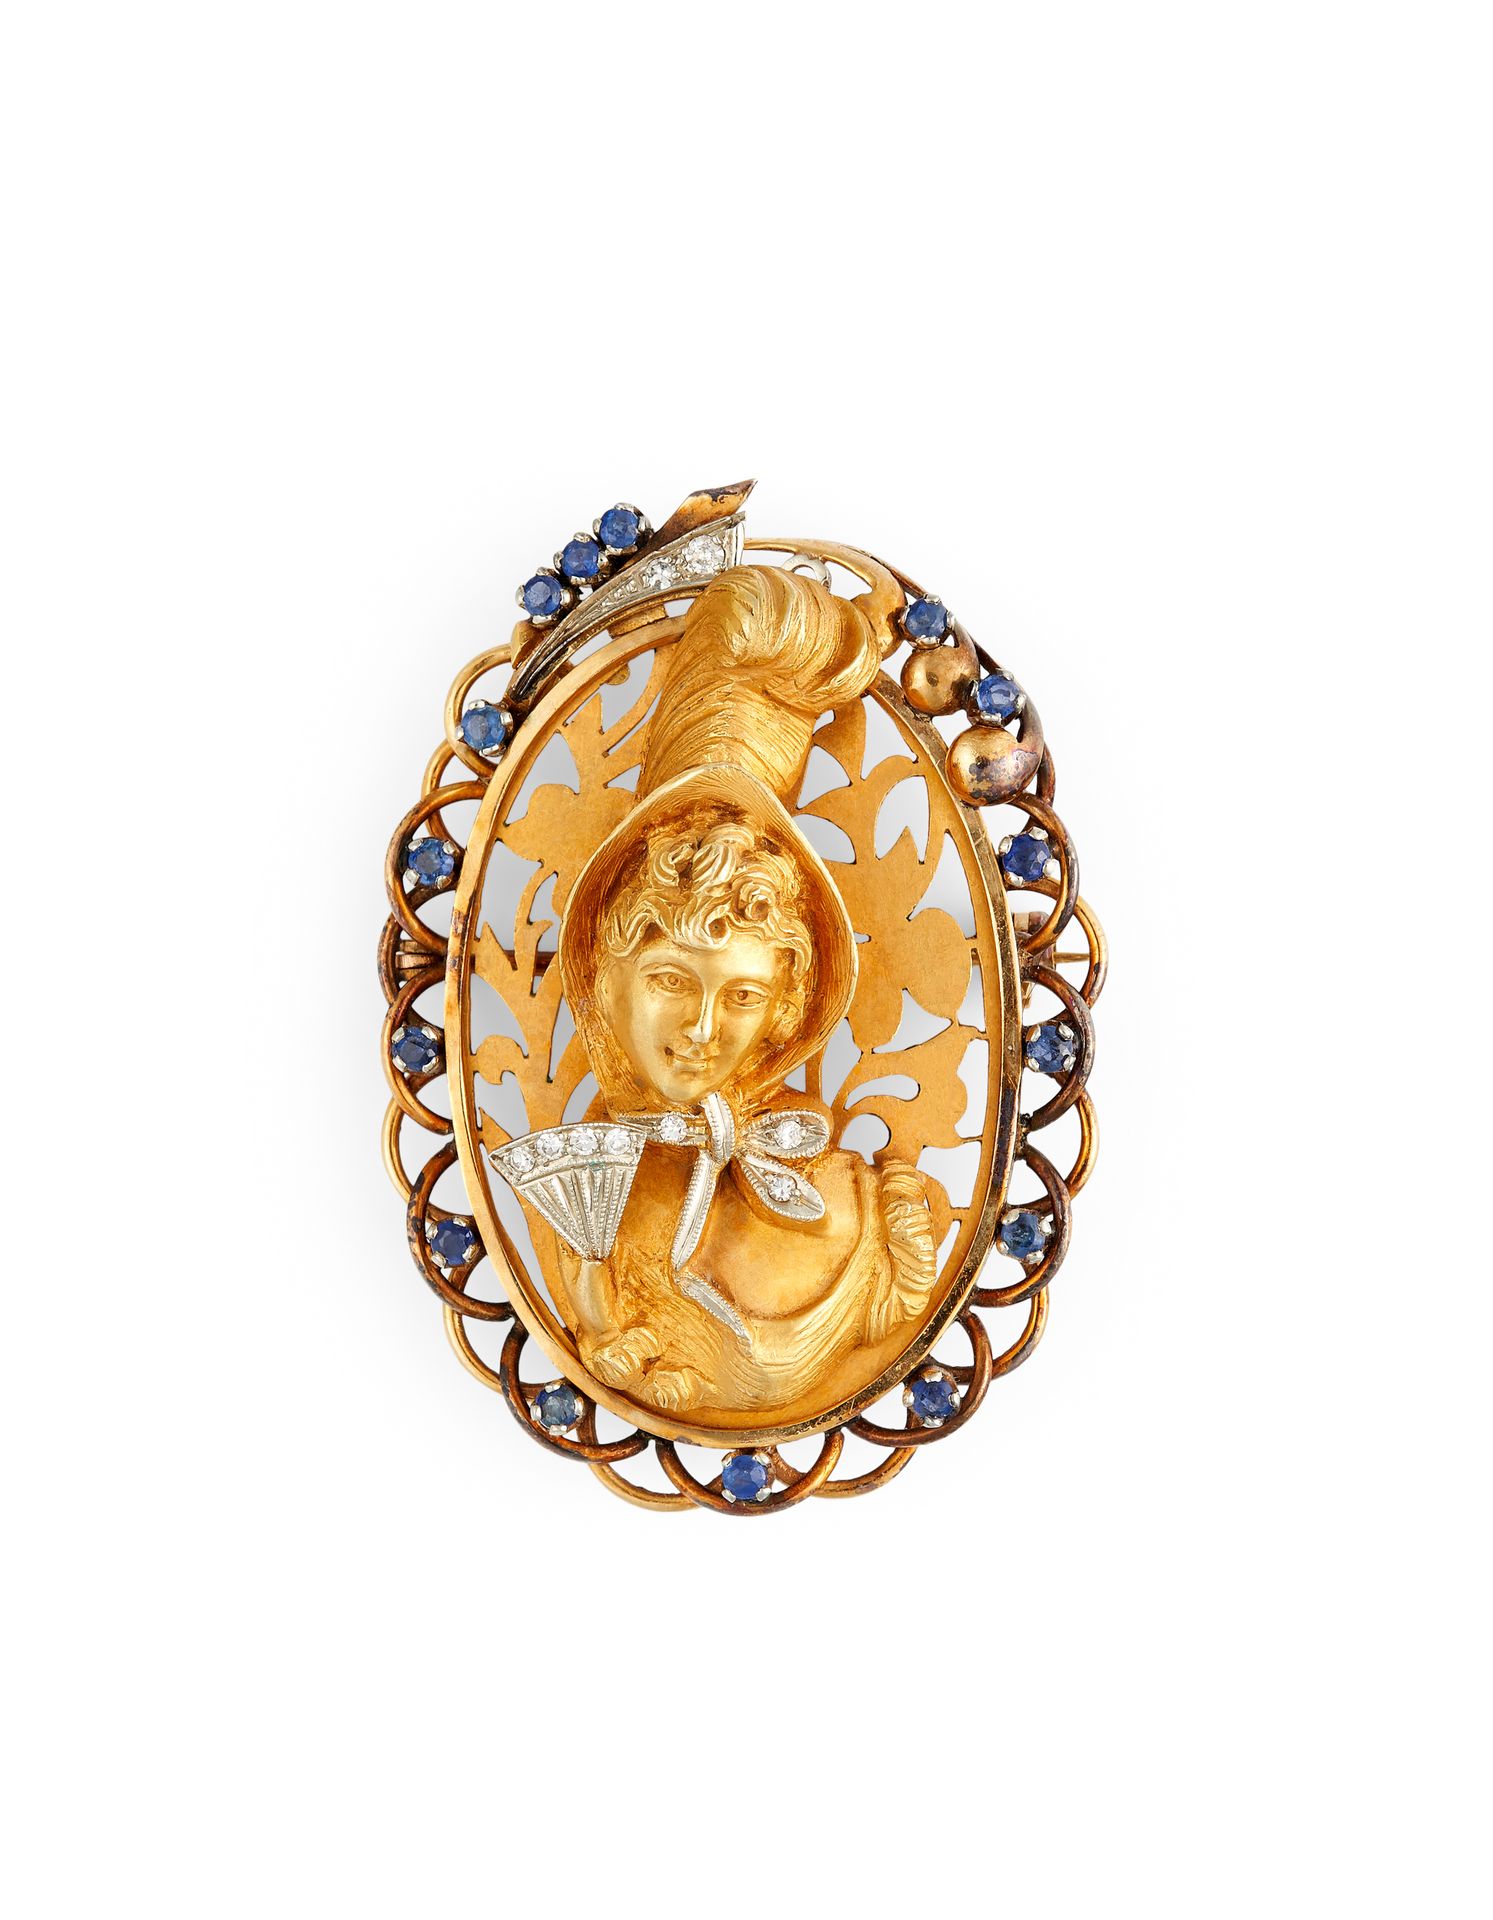 Null 吊坠-布鲁赫 18K黄金，描绘了一位手持扇子的女士，扇子上镶嵌着明亮式切割钻石，框架上镶嵌着蓝宝石和明亮式切割钻石。

印记。意大利，750

尺寸：&hellip;